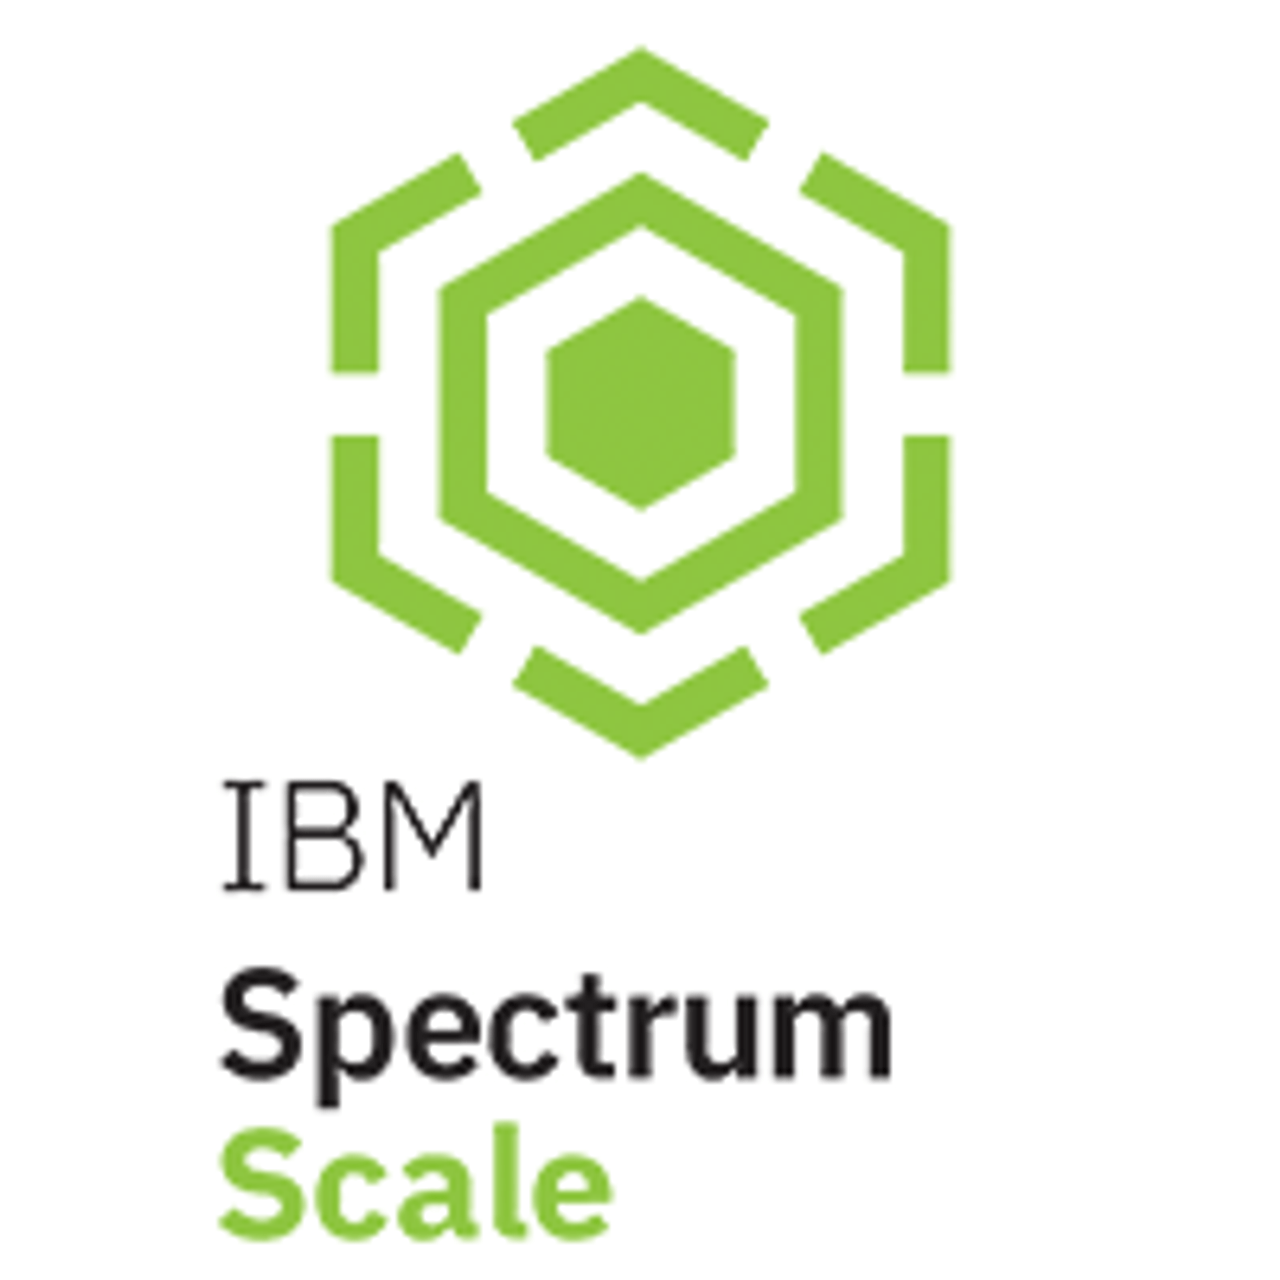 D1VM0LL|Spectrum-Scale-Terabyte|48M